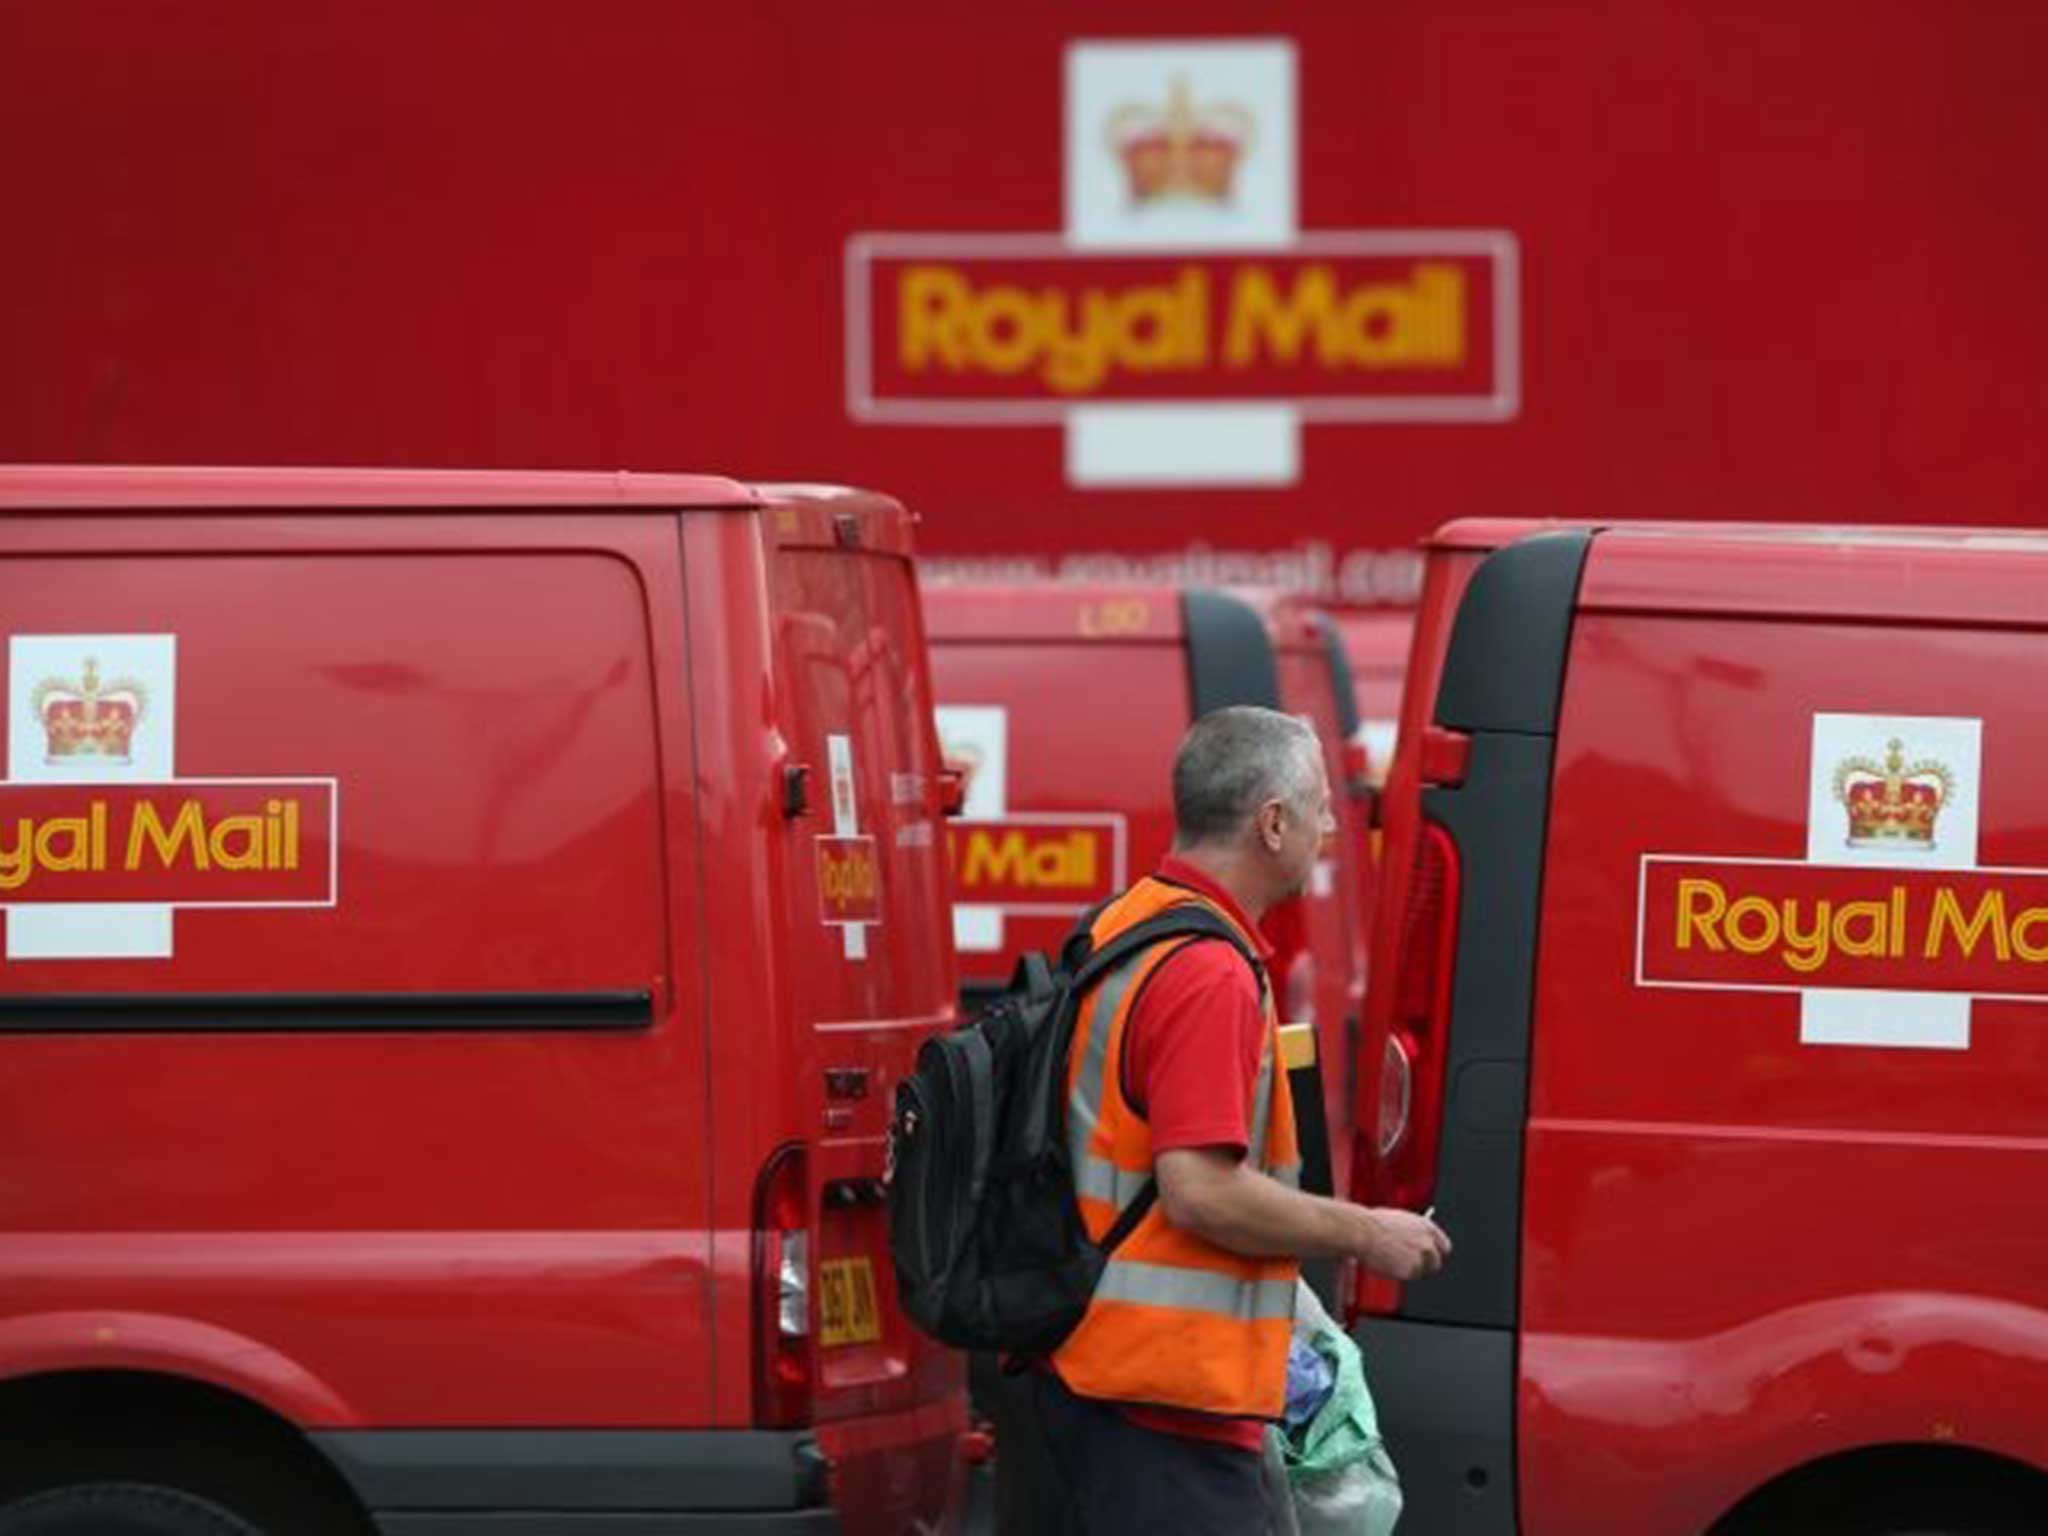 Royal Mail believes that its rivals have unfair advantages